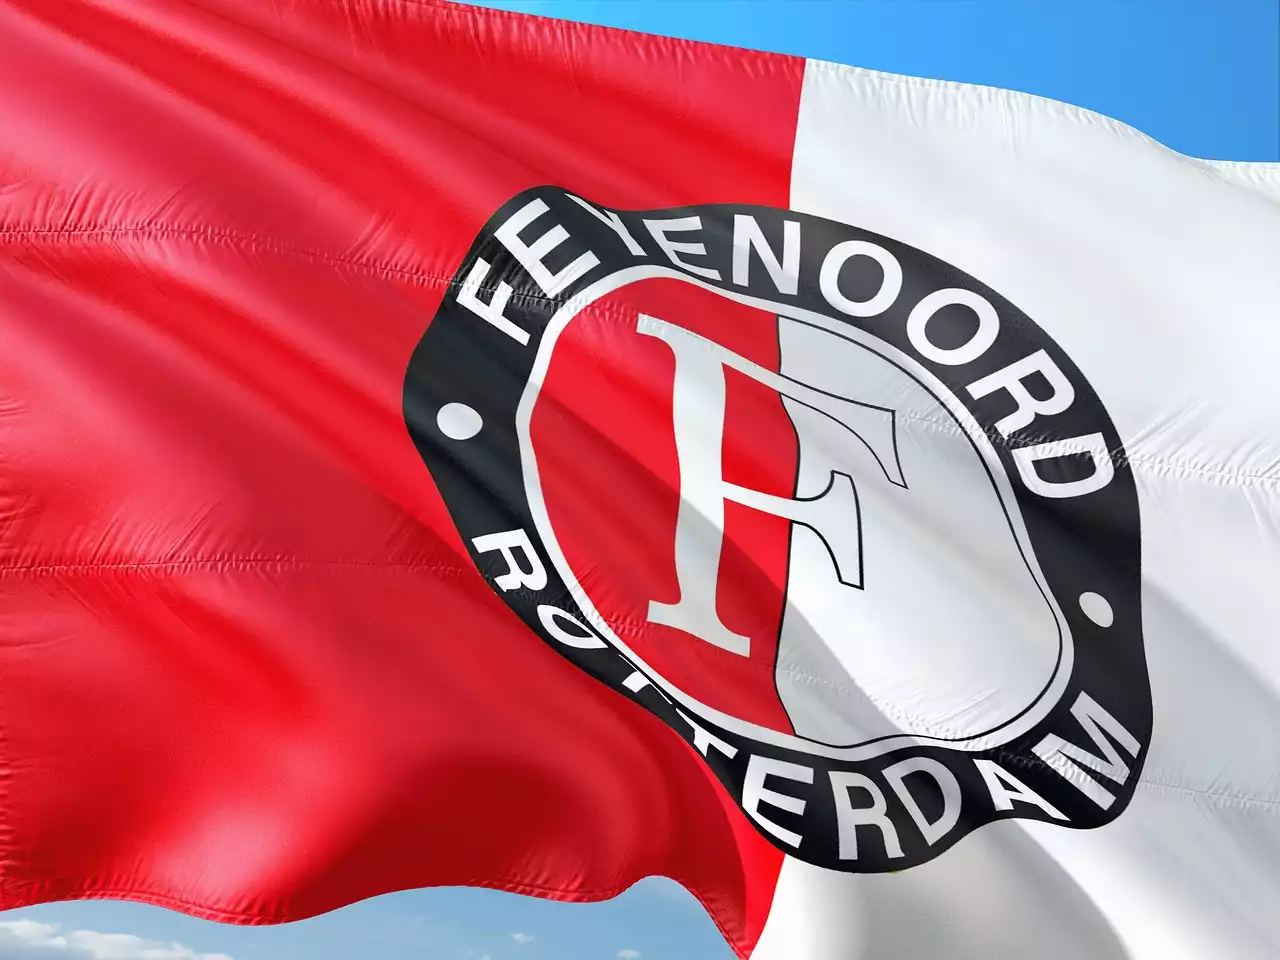 Sucesso lendário: os 10 principais clubes que moldaram o passado ilustre da Eredivisie